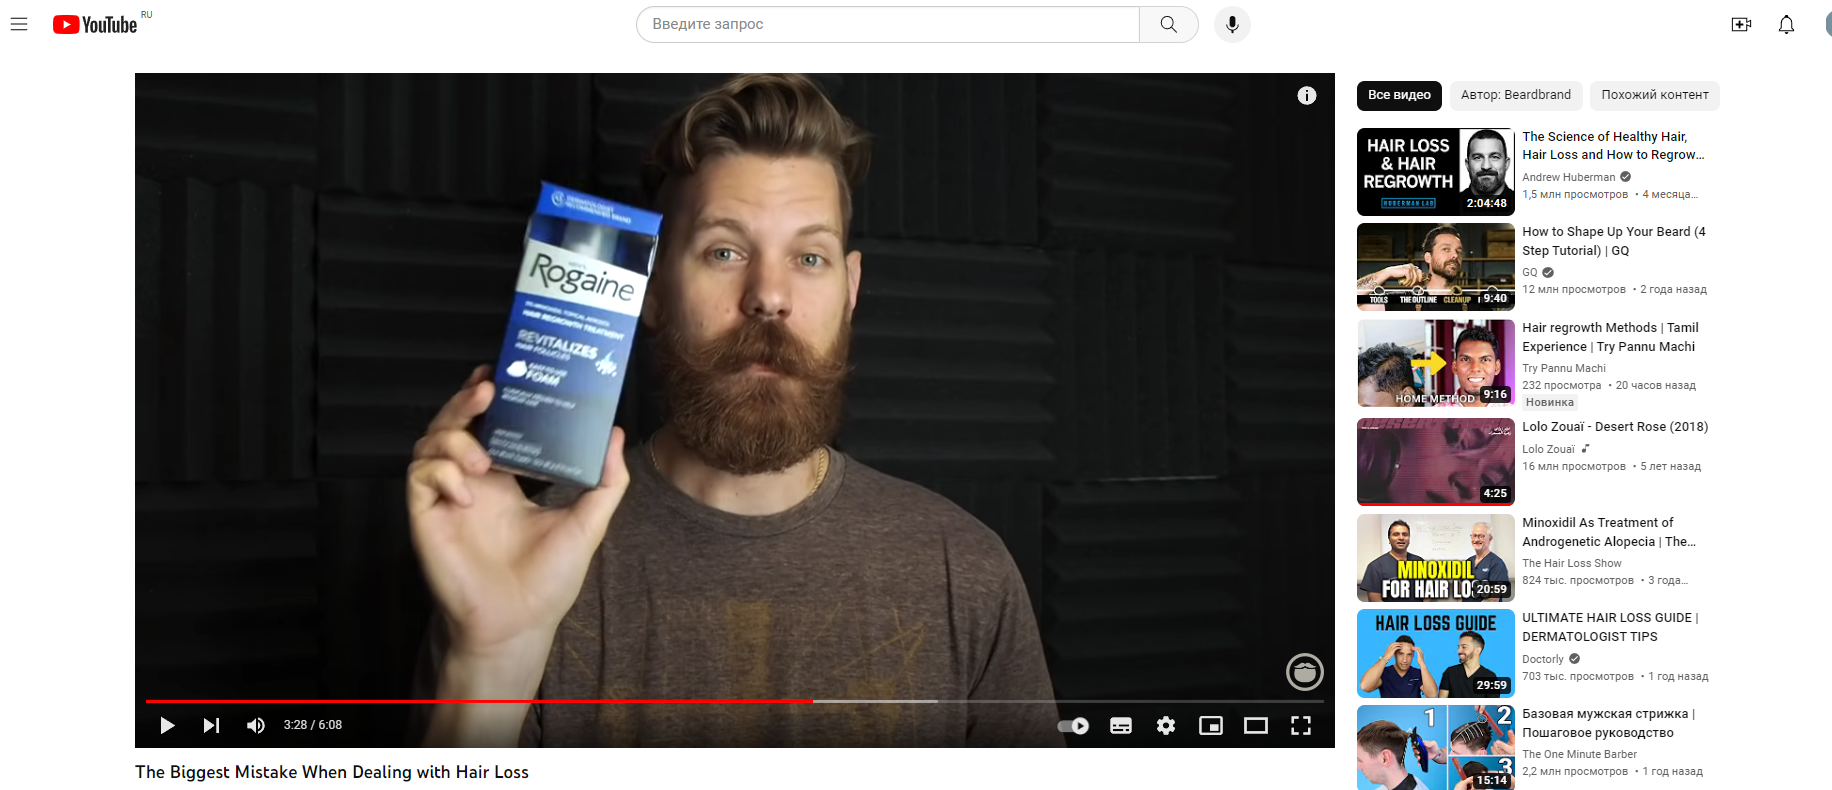 Пример видео с рекламой от выпадения волос. Канал Beardbrand